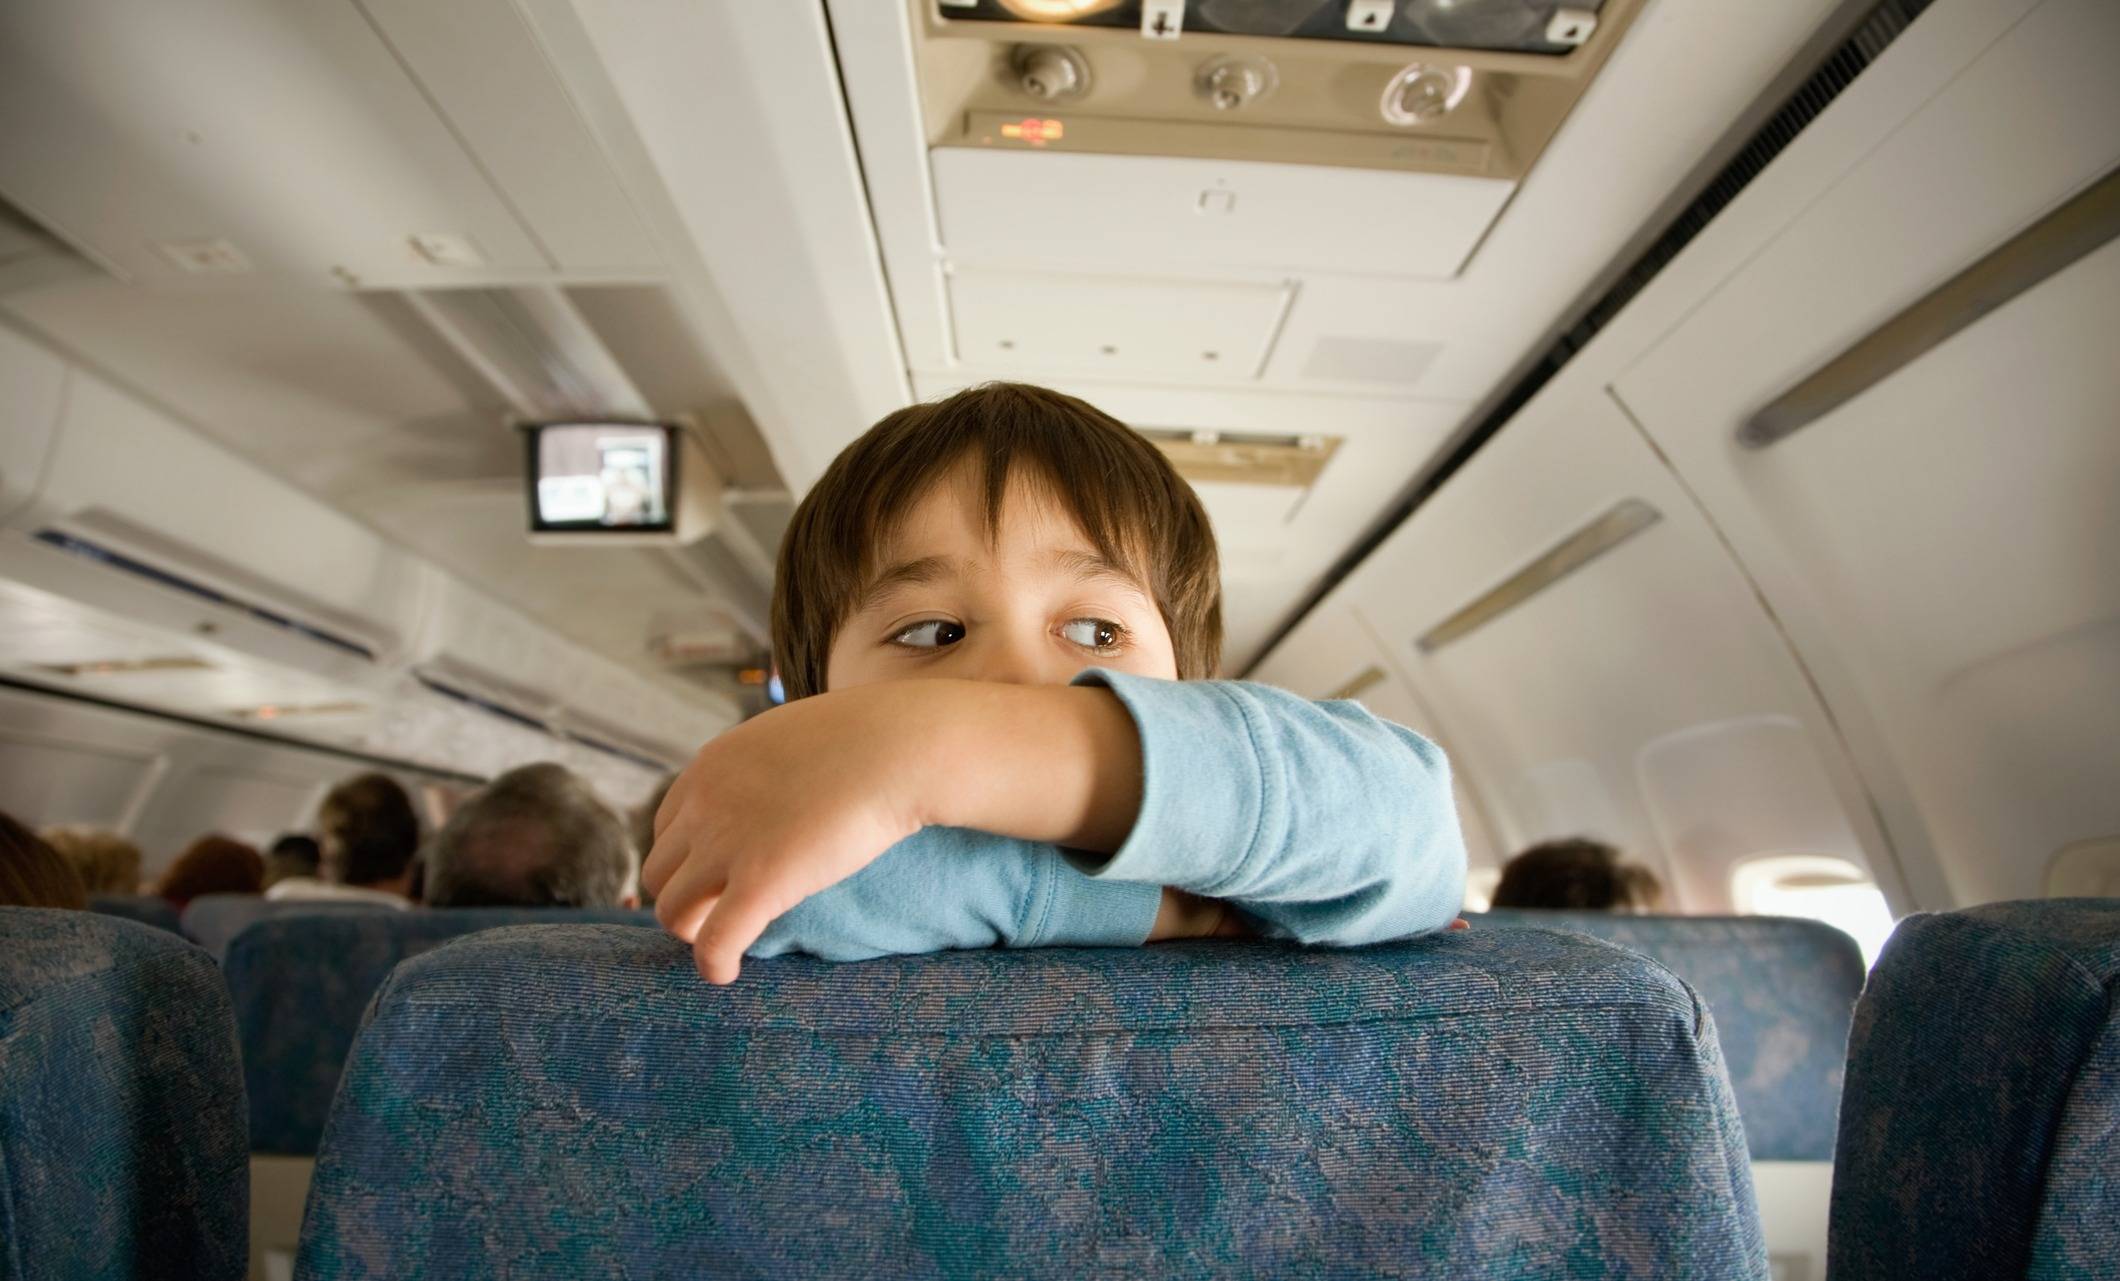 Перелет с годовалым ребенком на самолете: что необходимо знать